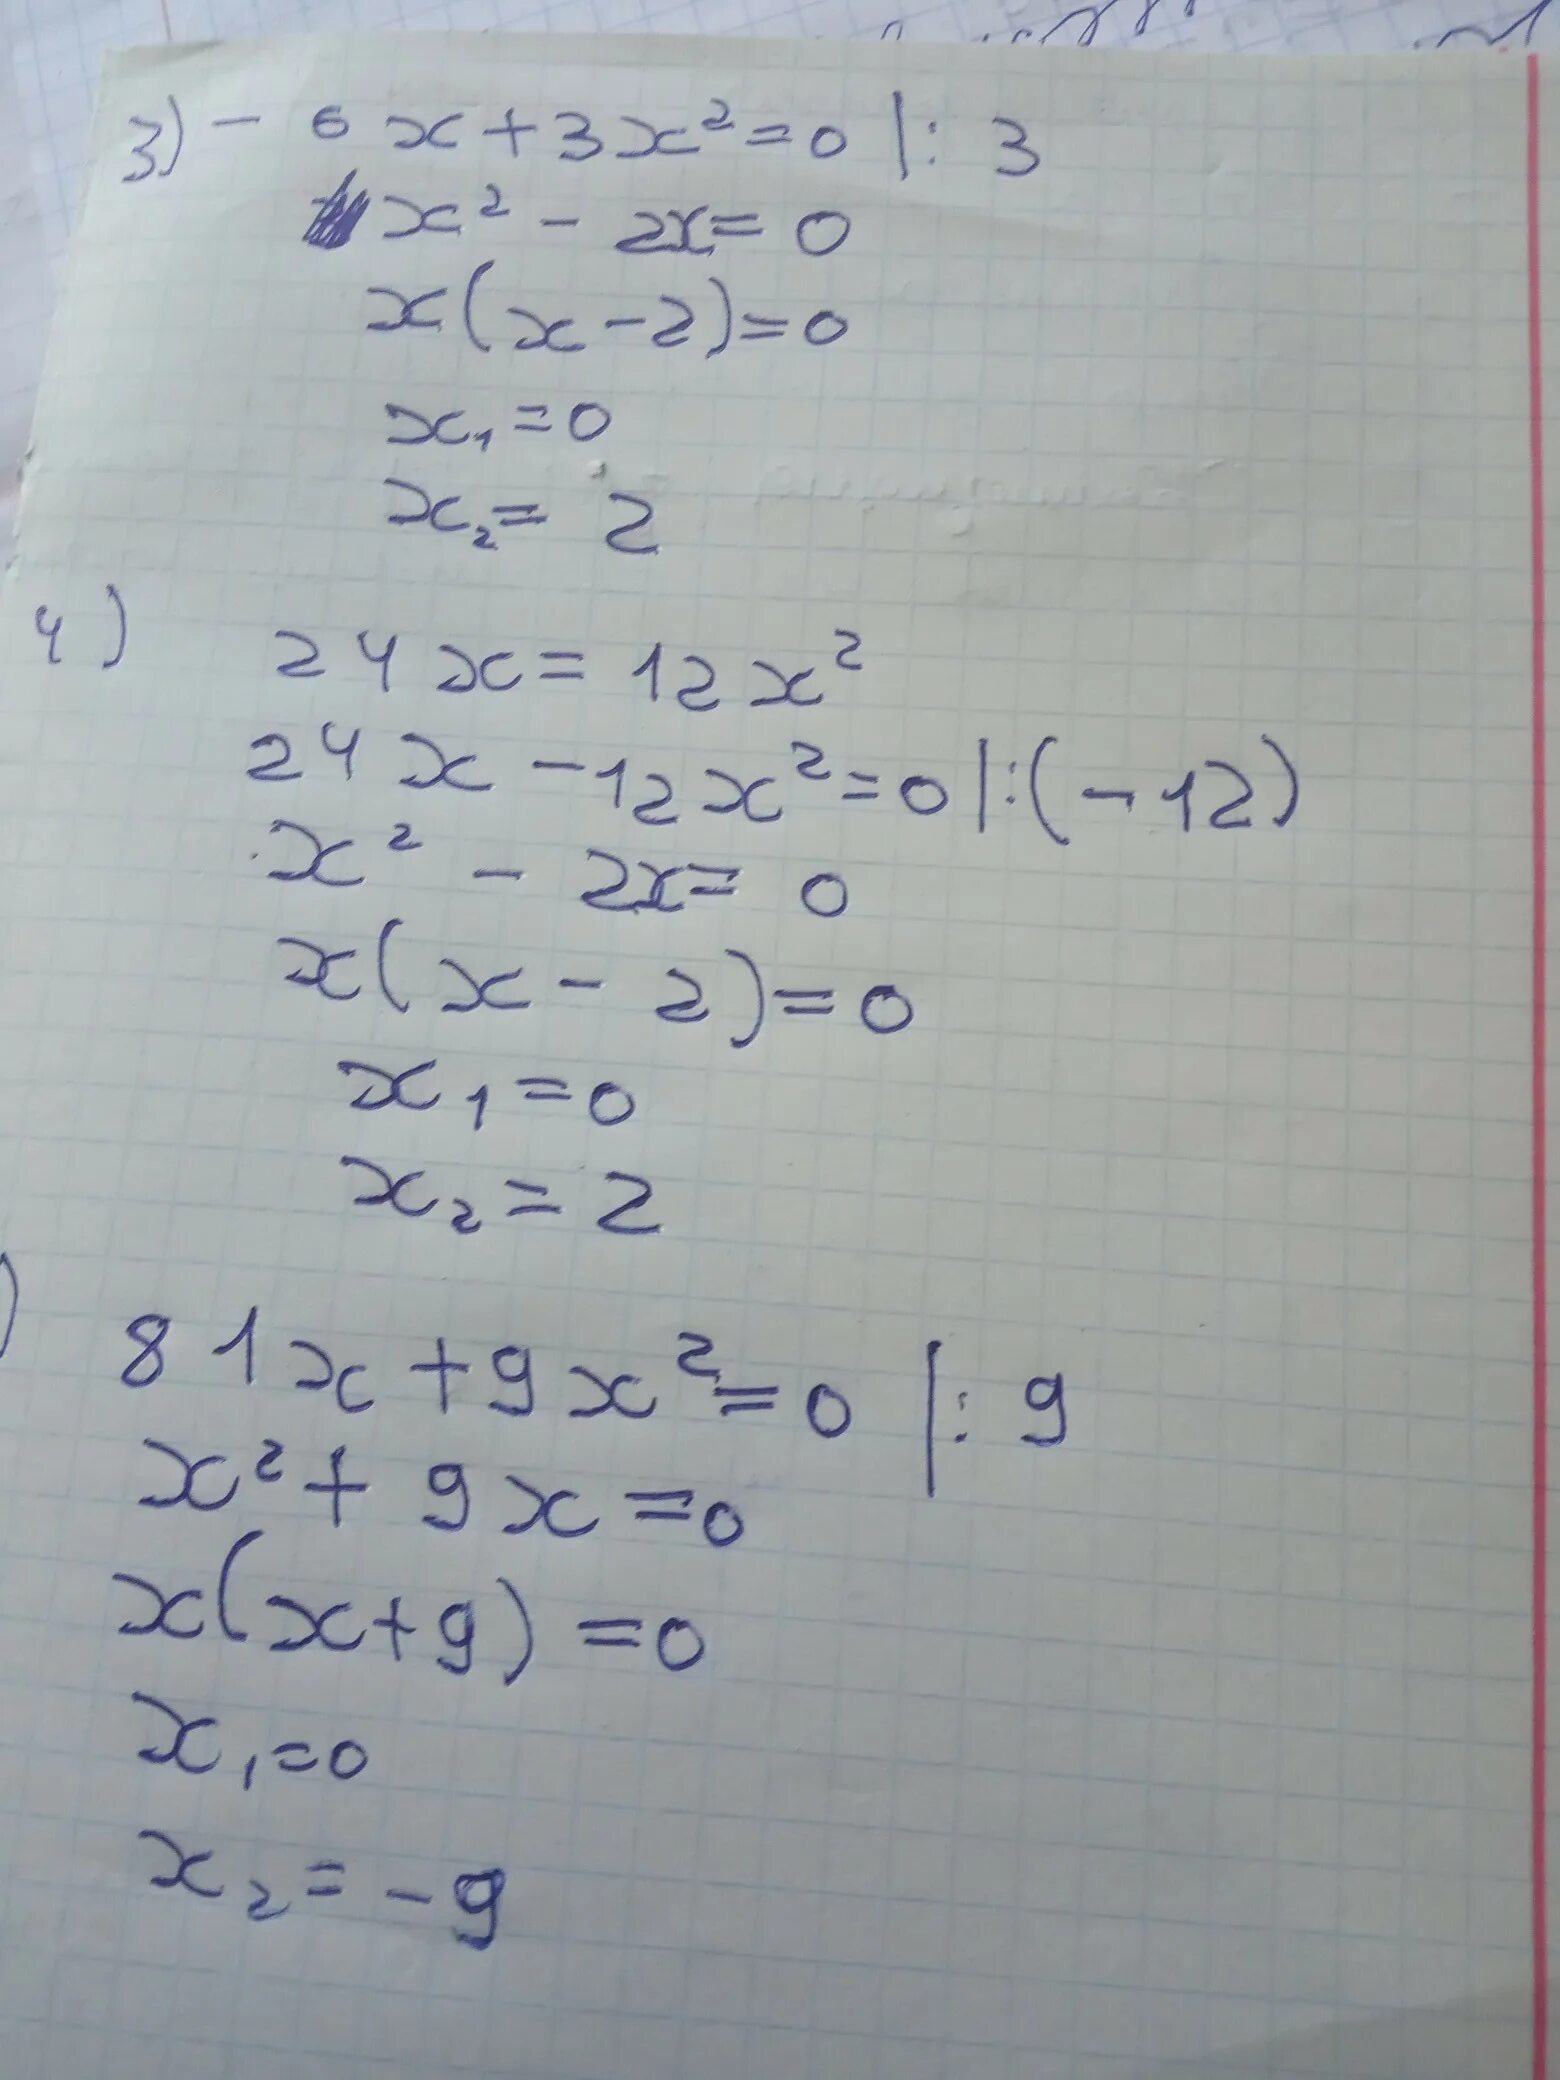 3x 6 6x 9 0. X3-6x2+3x+21=0. X^3-3x^2+3x+2. -X2-6x-9<=0 решение. X 2 2x 3 0 ответ.